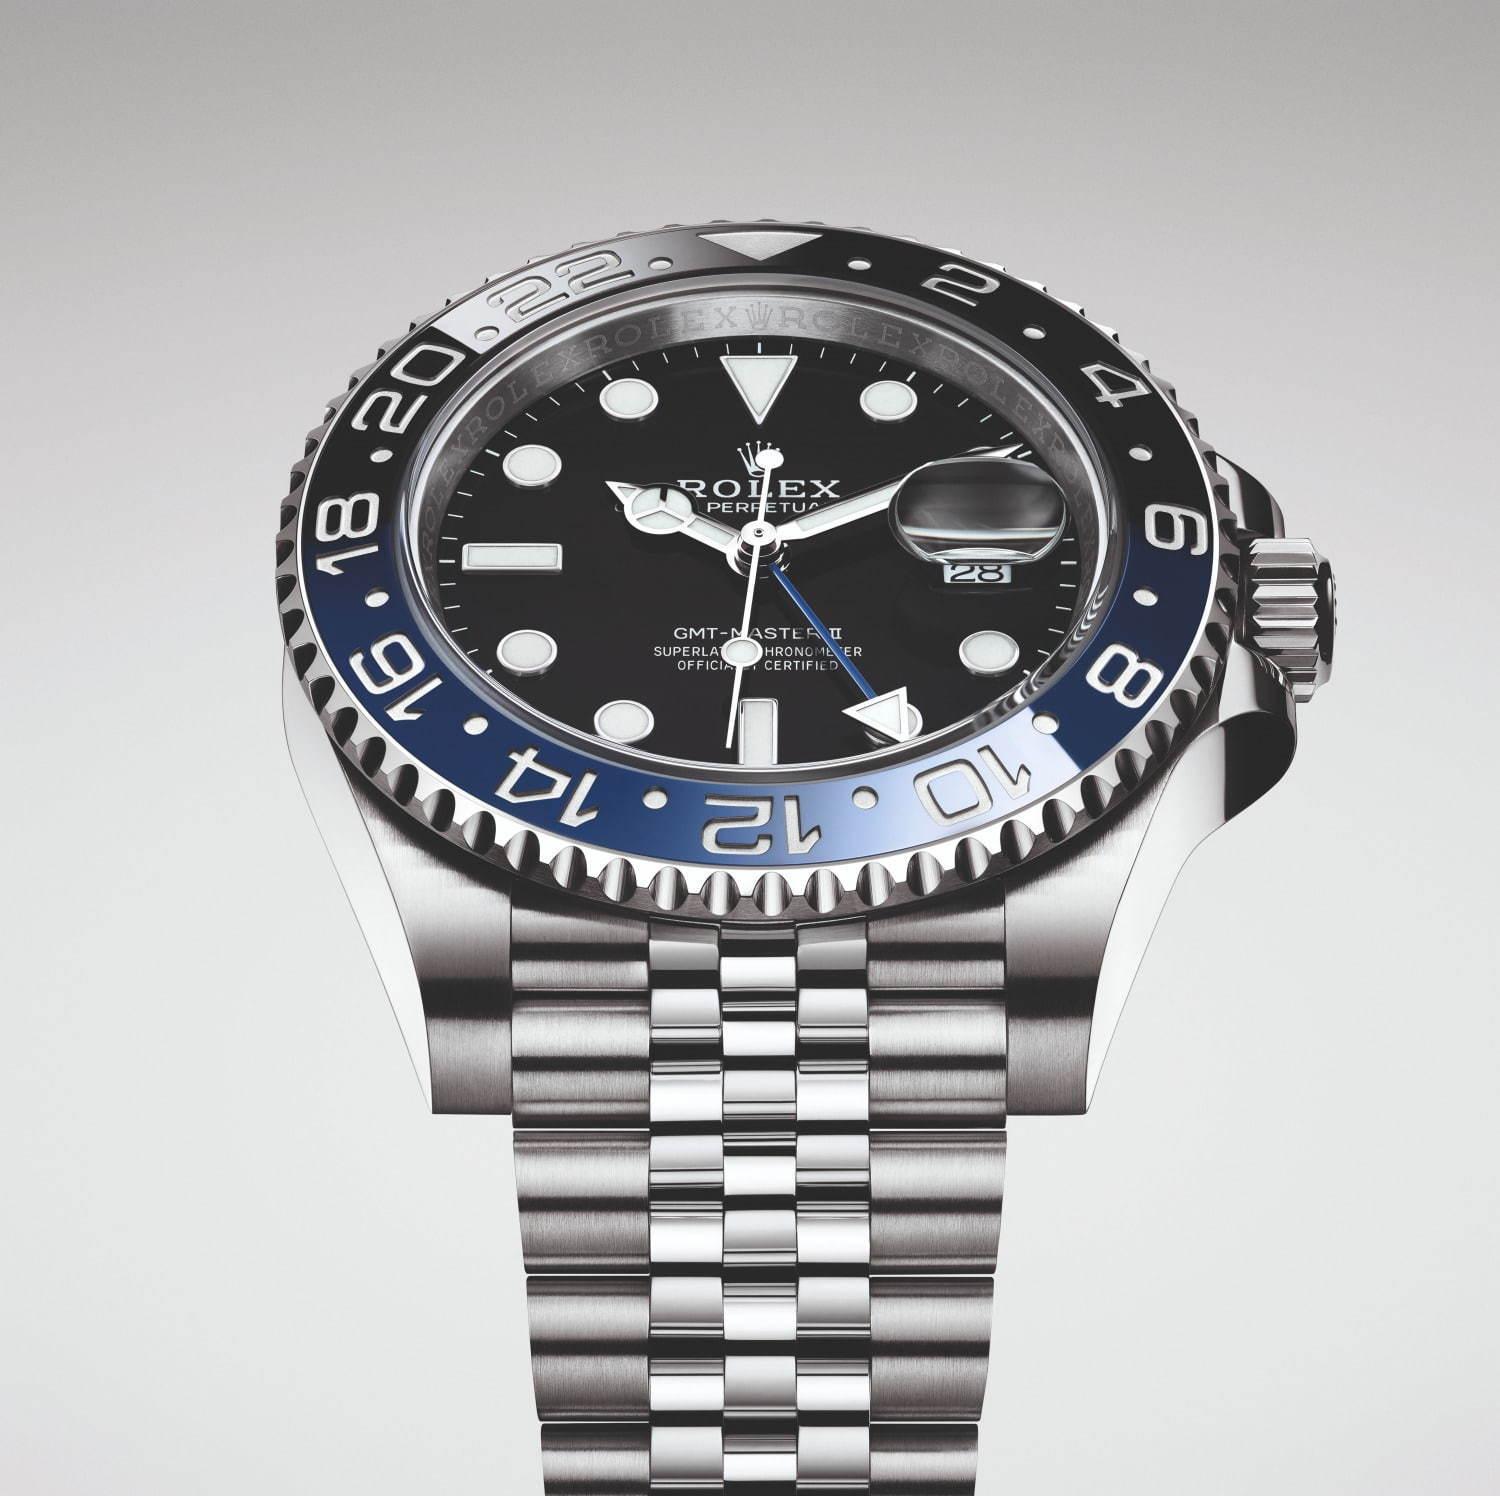 ロレックス「GMTマスター Ⅱ」新モデル - 業界随一の堅牢性・信頼性をもつ腕時計、青黒ベゼル採用 コピー